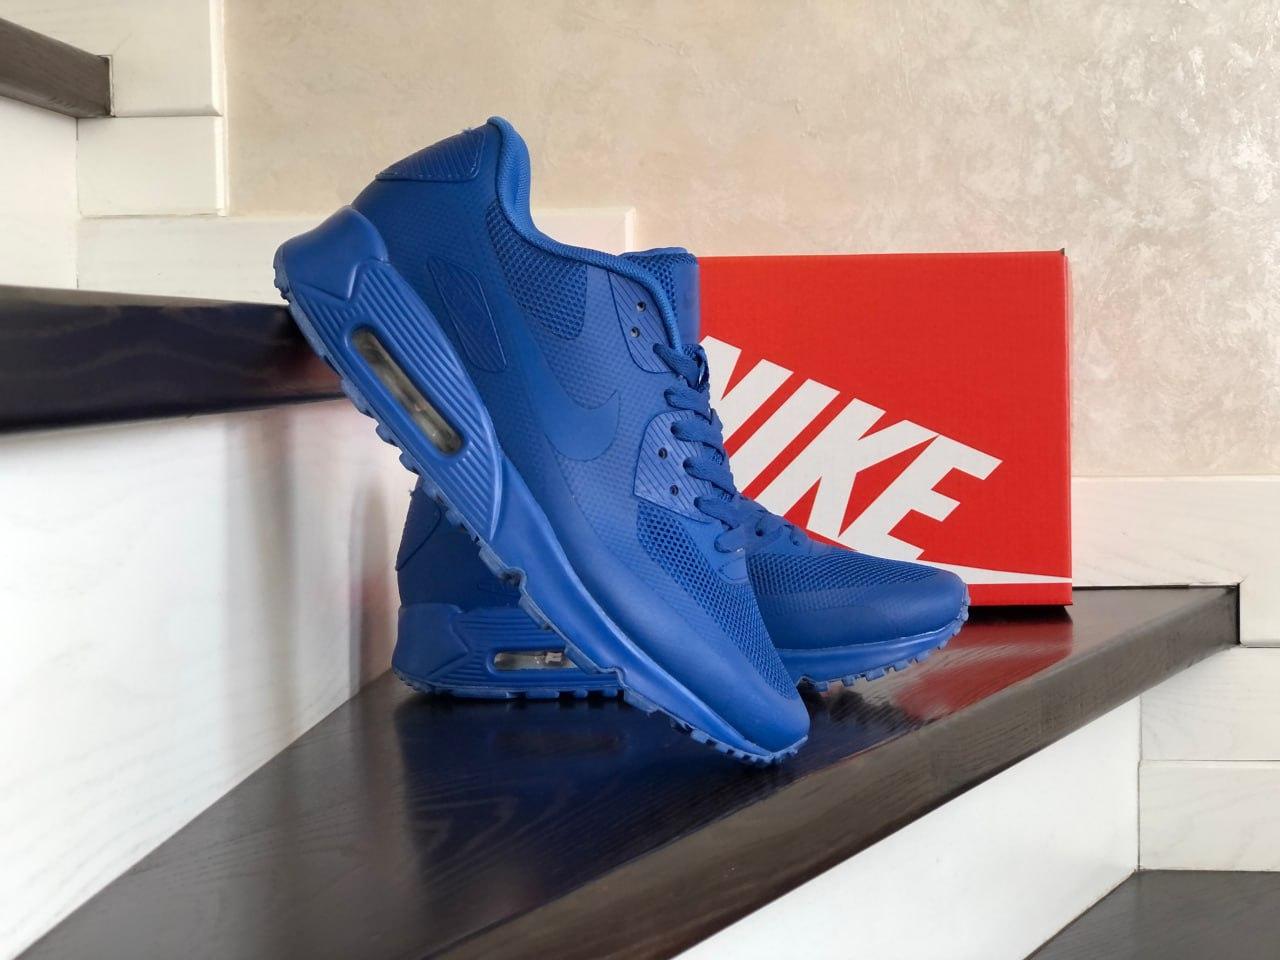 Чоловічі легкі стильні яскраві кросівки сині Nike Hyperfuse сітка,